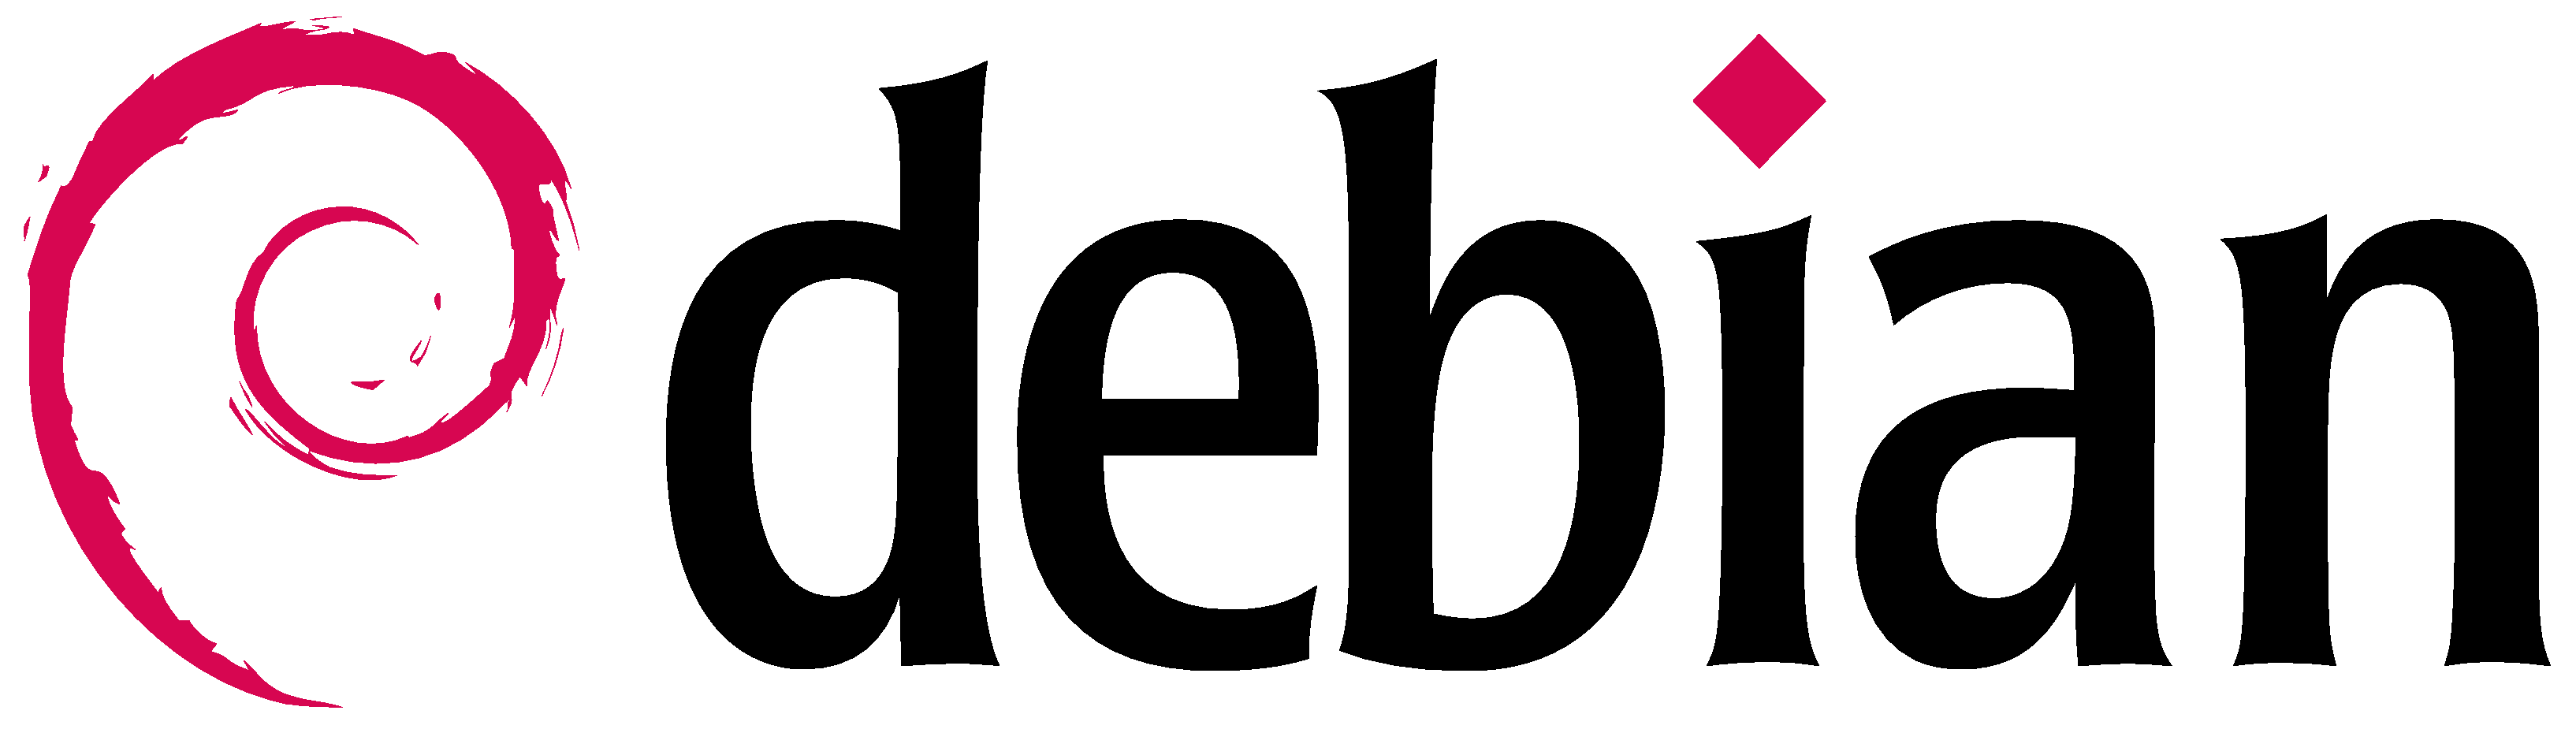 Article de blog sur Qu'est-ce que Debian ?